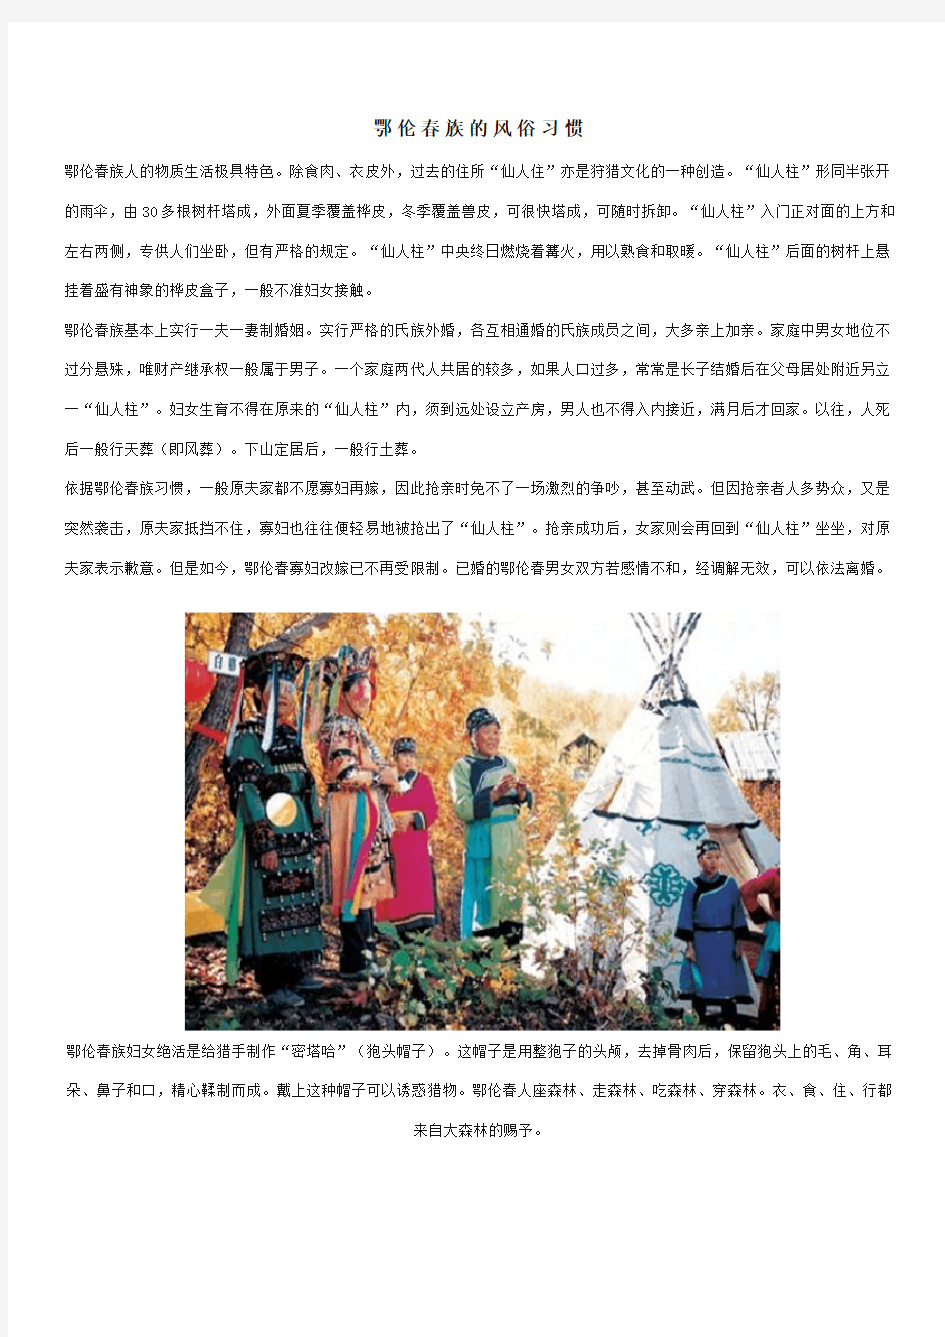 鄂伦春族的民族习俗,节日,工艺